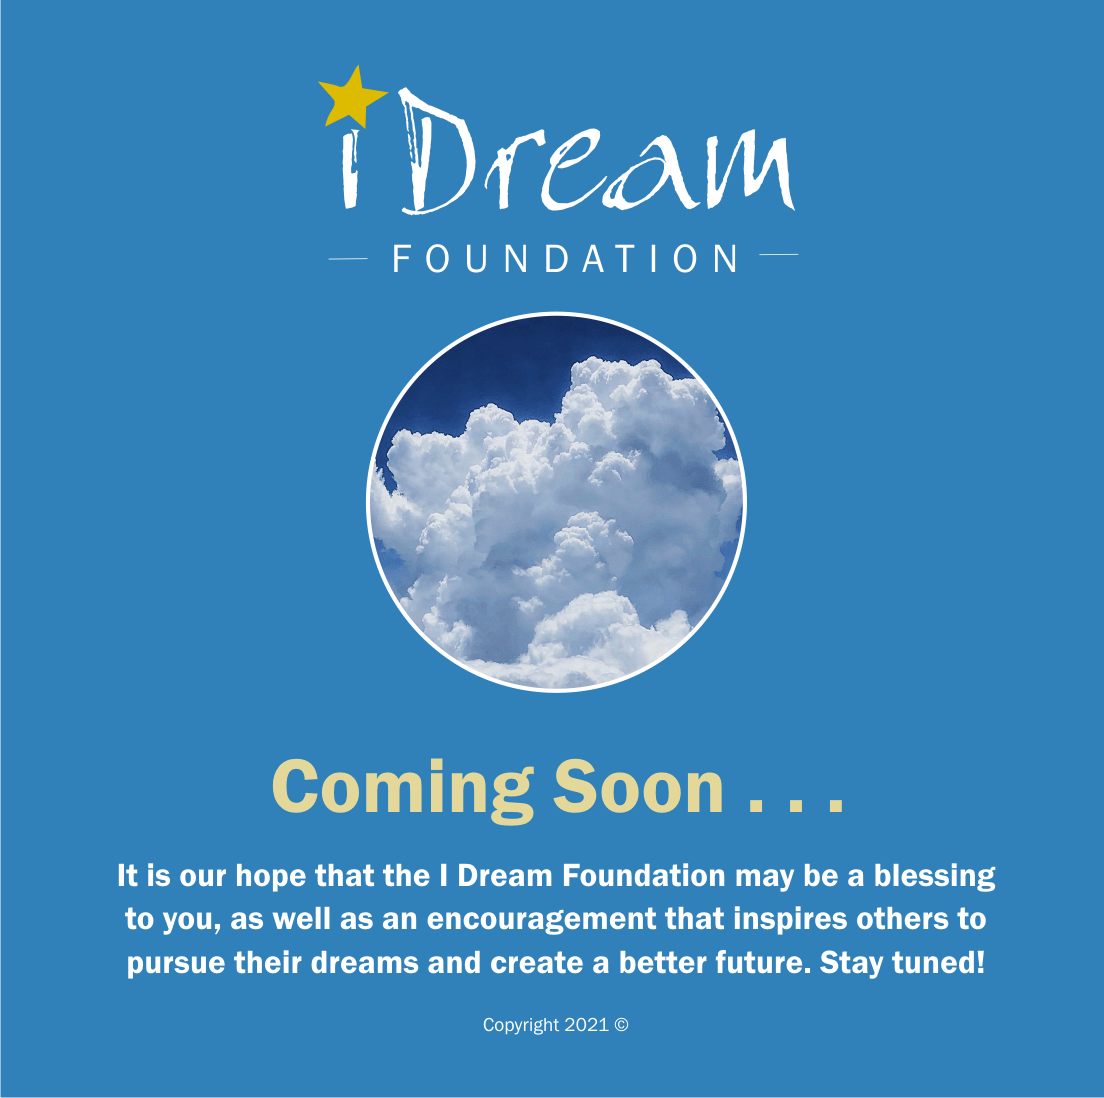 iDream Foundation - Making Dreams Come True